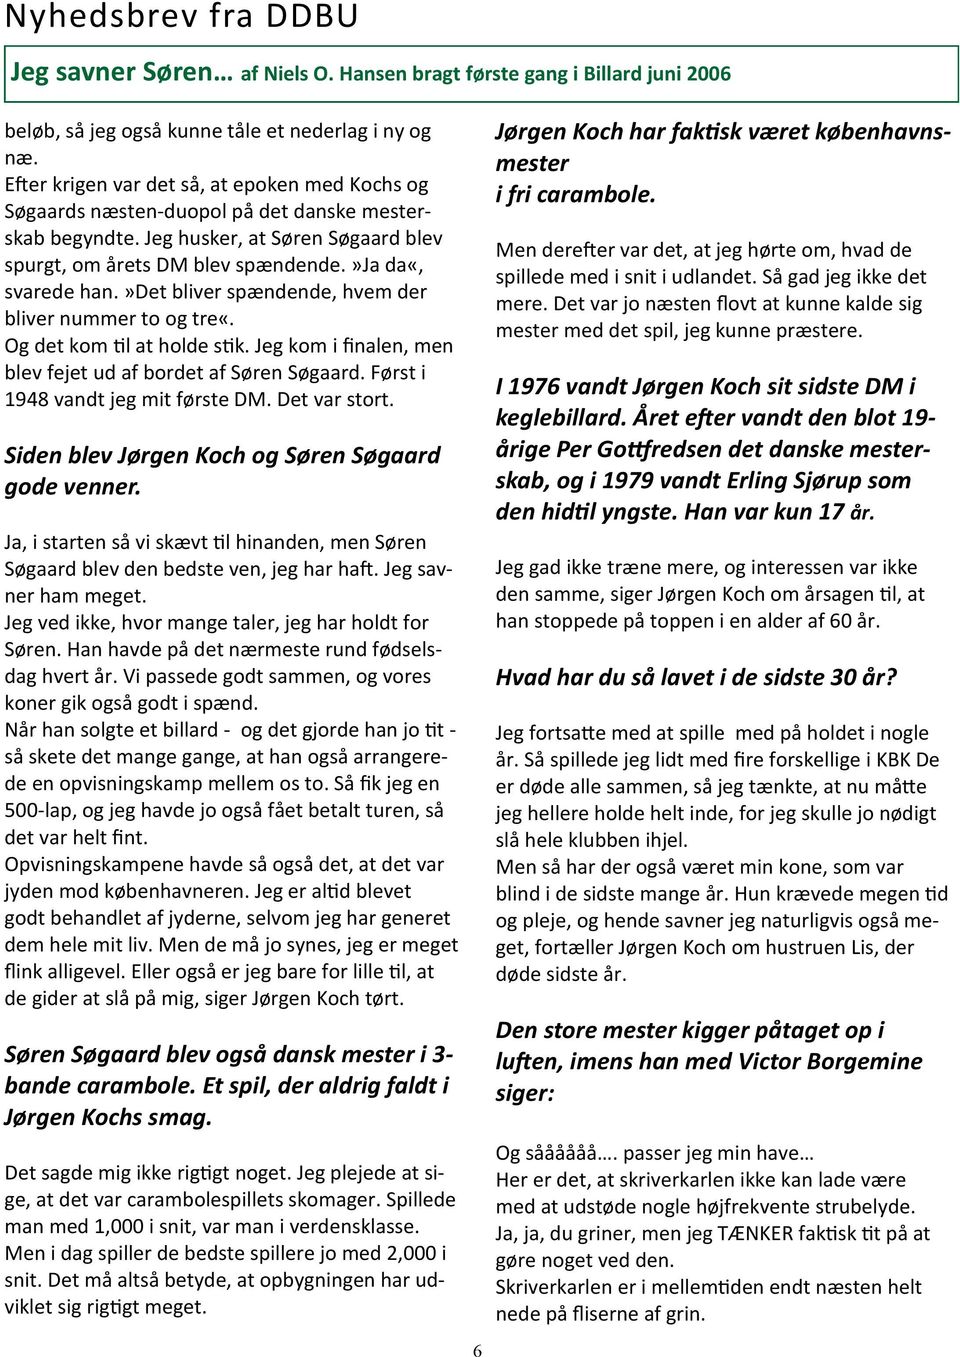 Nyhedsbrev fra DDBU. Dansk billard legende død - 96 år - PDF Gratis download